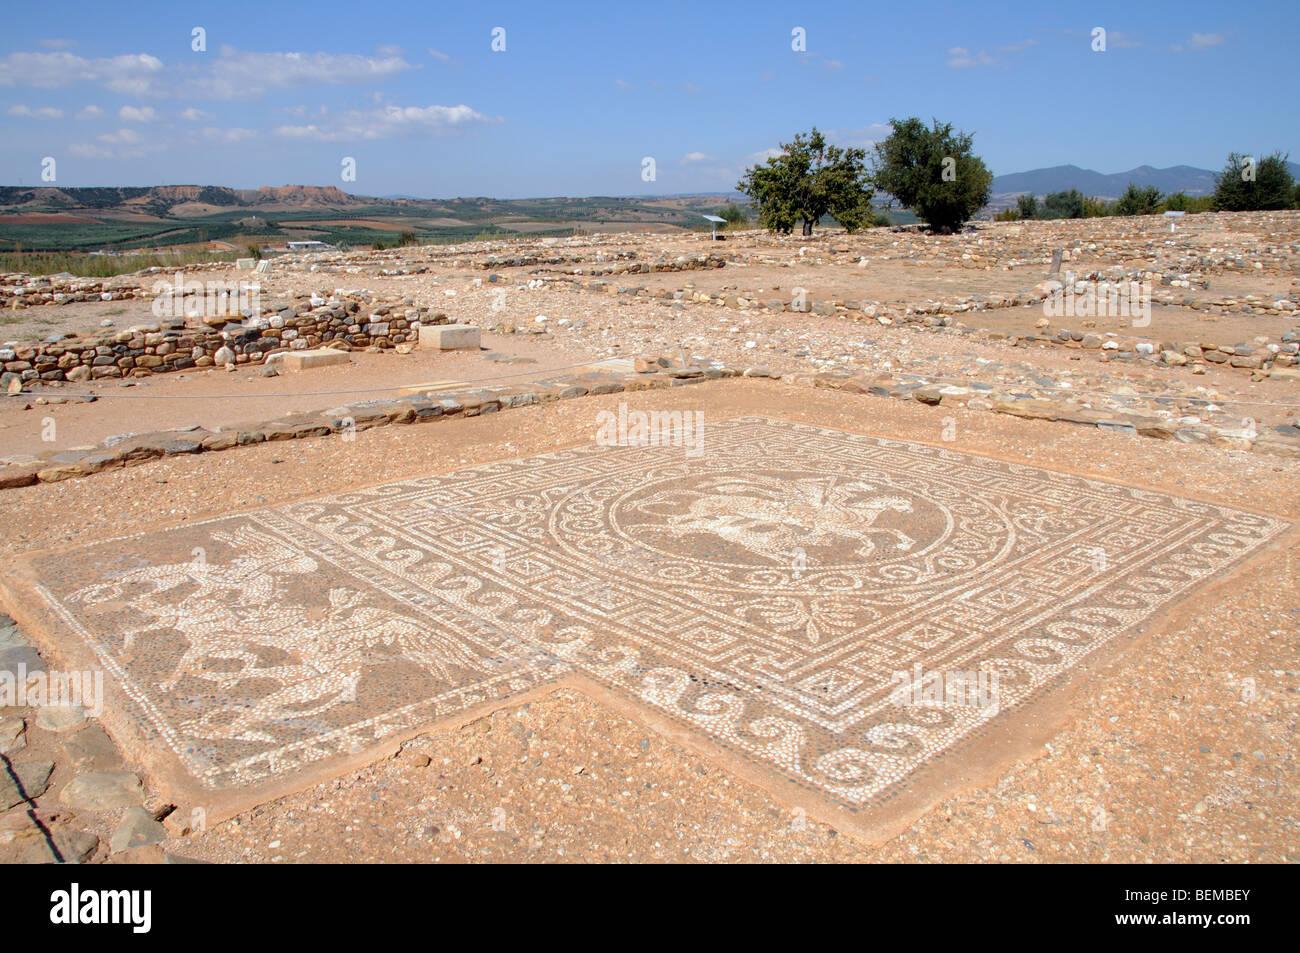 Olynthos ancienne ville grecque de vestiges archéologiques de Grèce du Nord mosaïque Pegasus & Bellerephon Banque D'Images